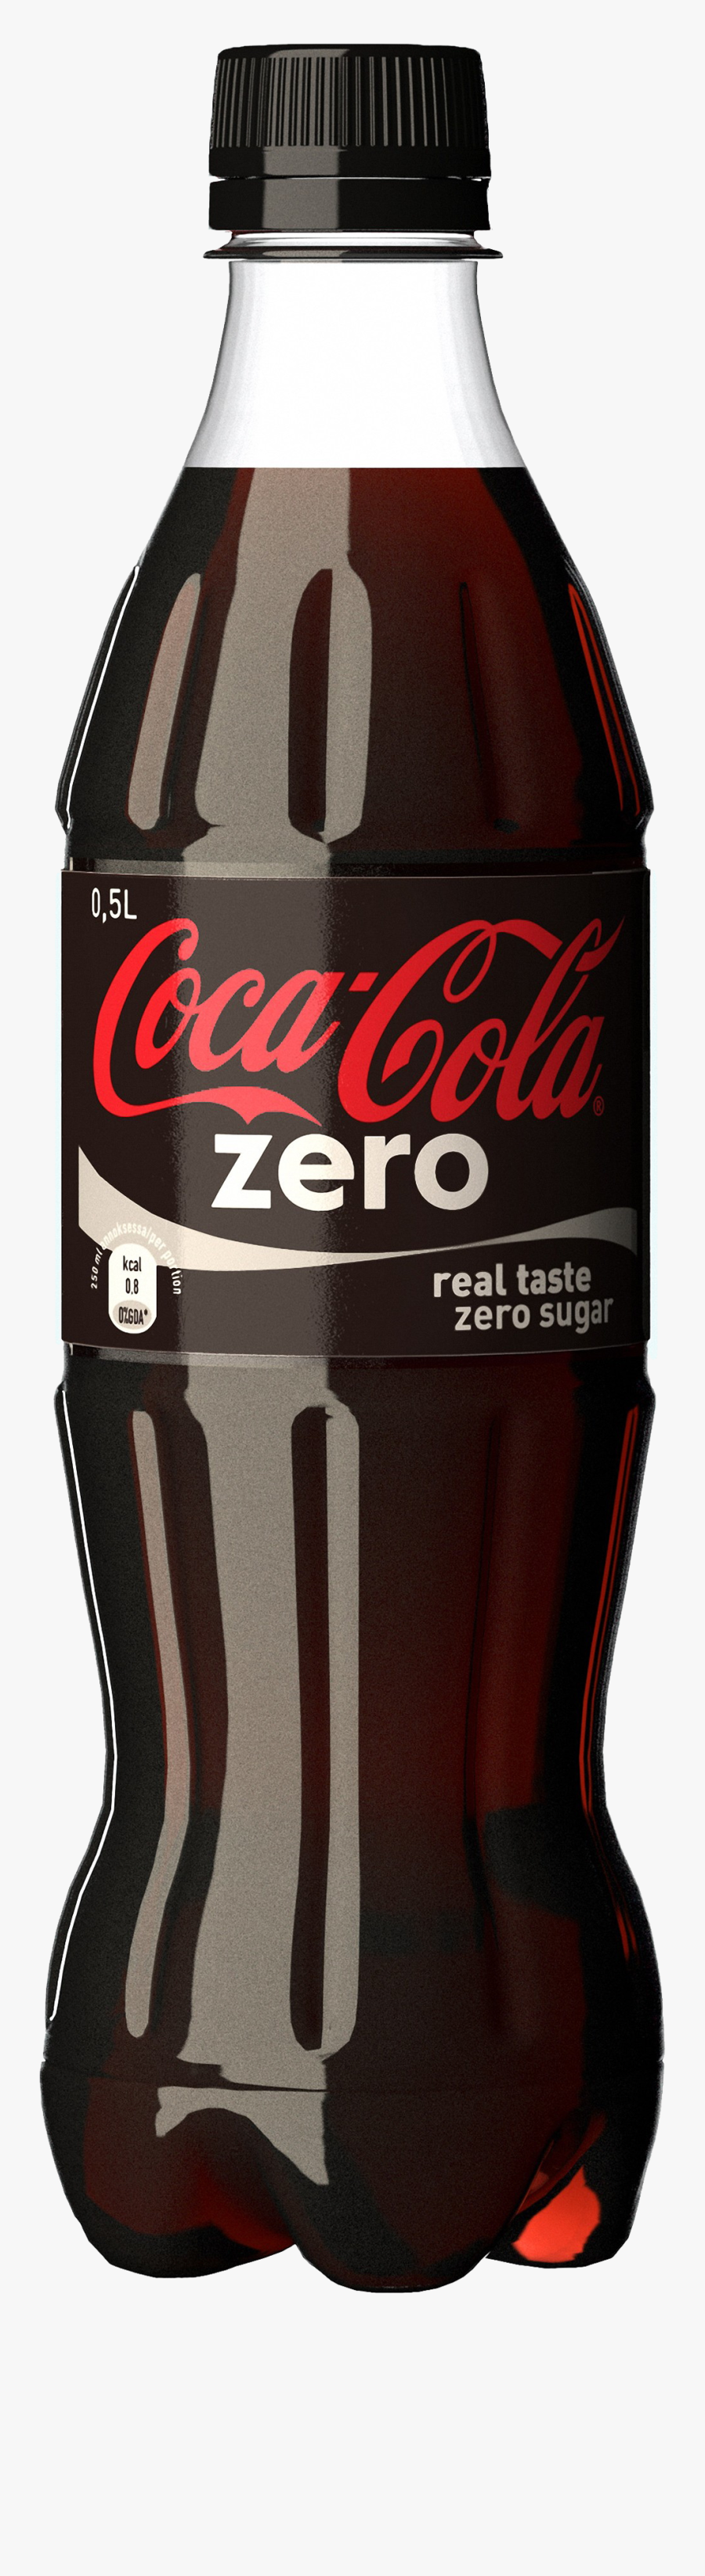 Coca Cola Zero Bottle Png Image - Coca Cola Zero Bottle Png, Transparent Clipart